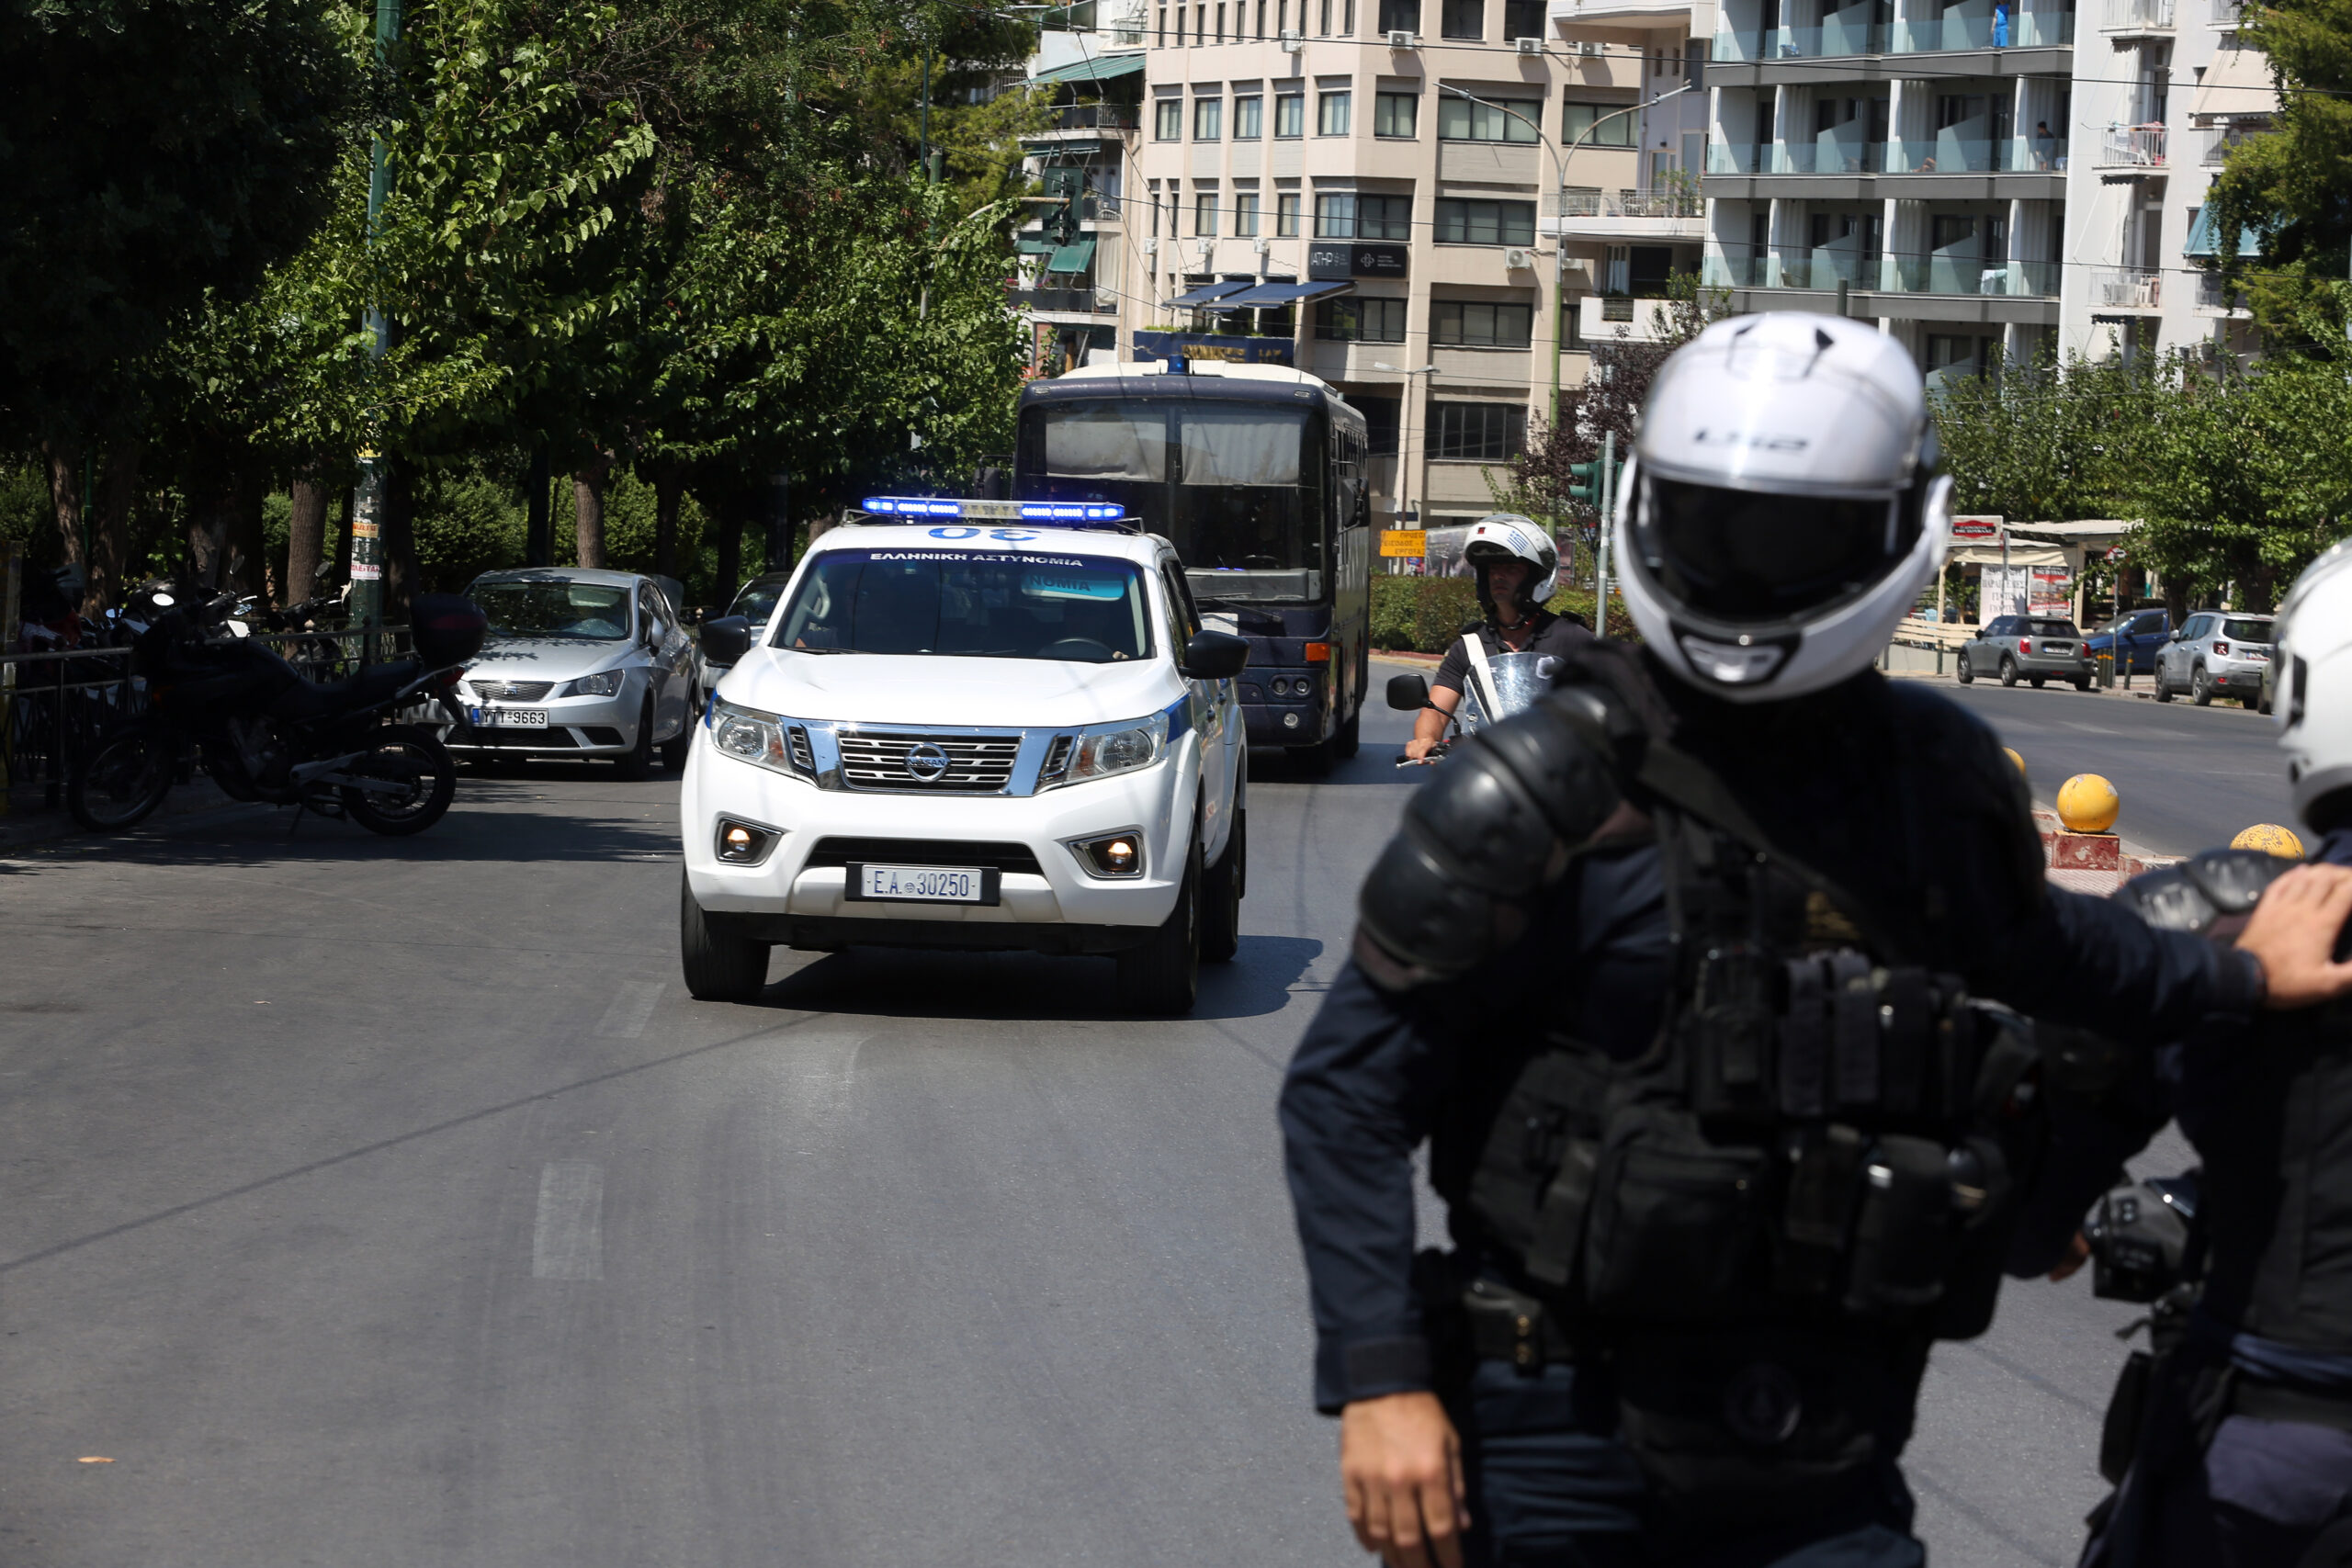 Σκηνές Φαρ Ουέστ στην Ελλάδα: Πυροβολισμοί στο Περιστέρι - Δυο τραυματίες